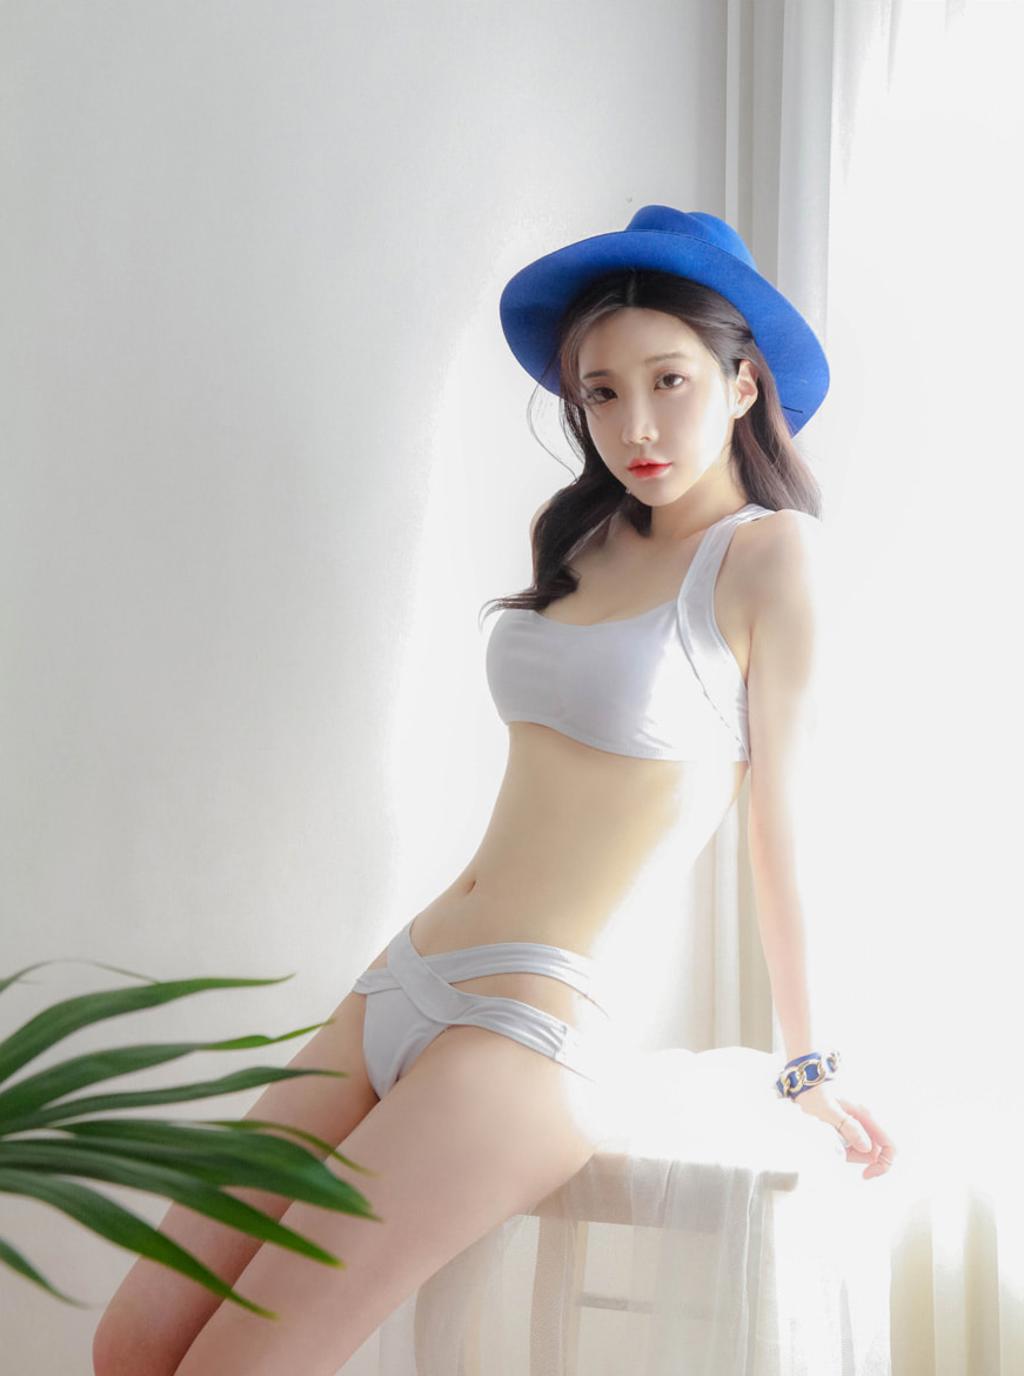 韩国M女模特.韩国美女模特写真集.Thor164